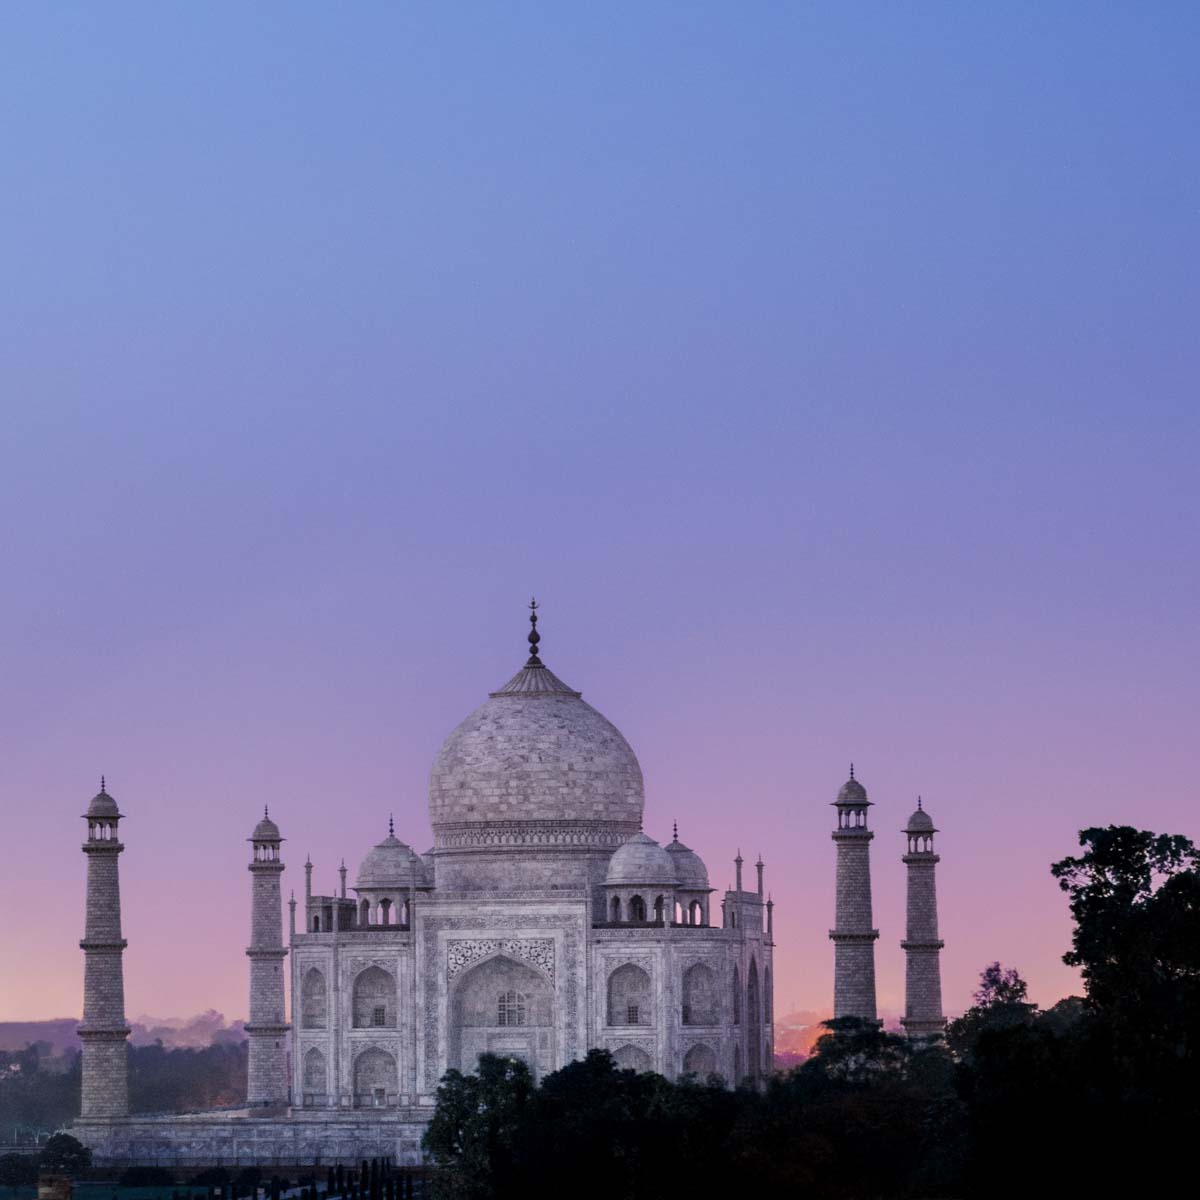 The Mausoleum - Taj Mahal, Agra, India